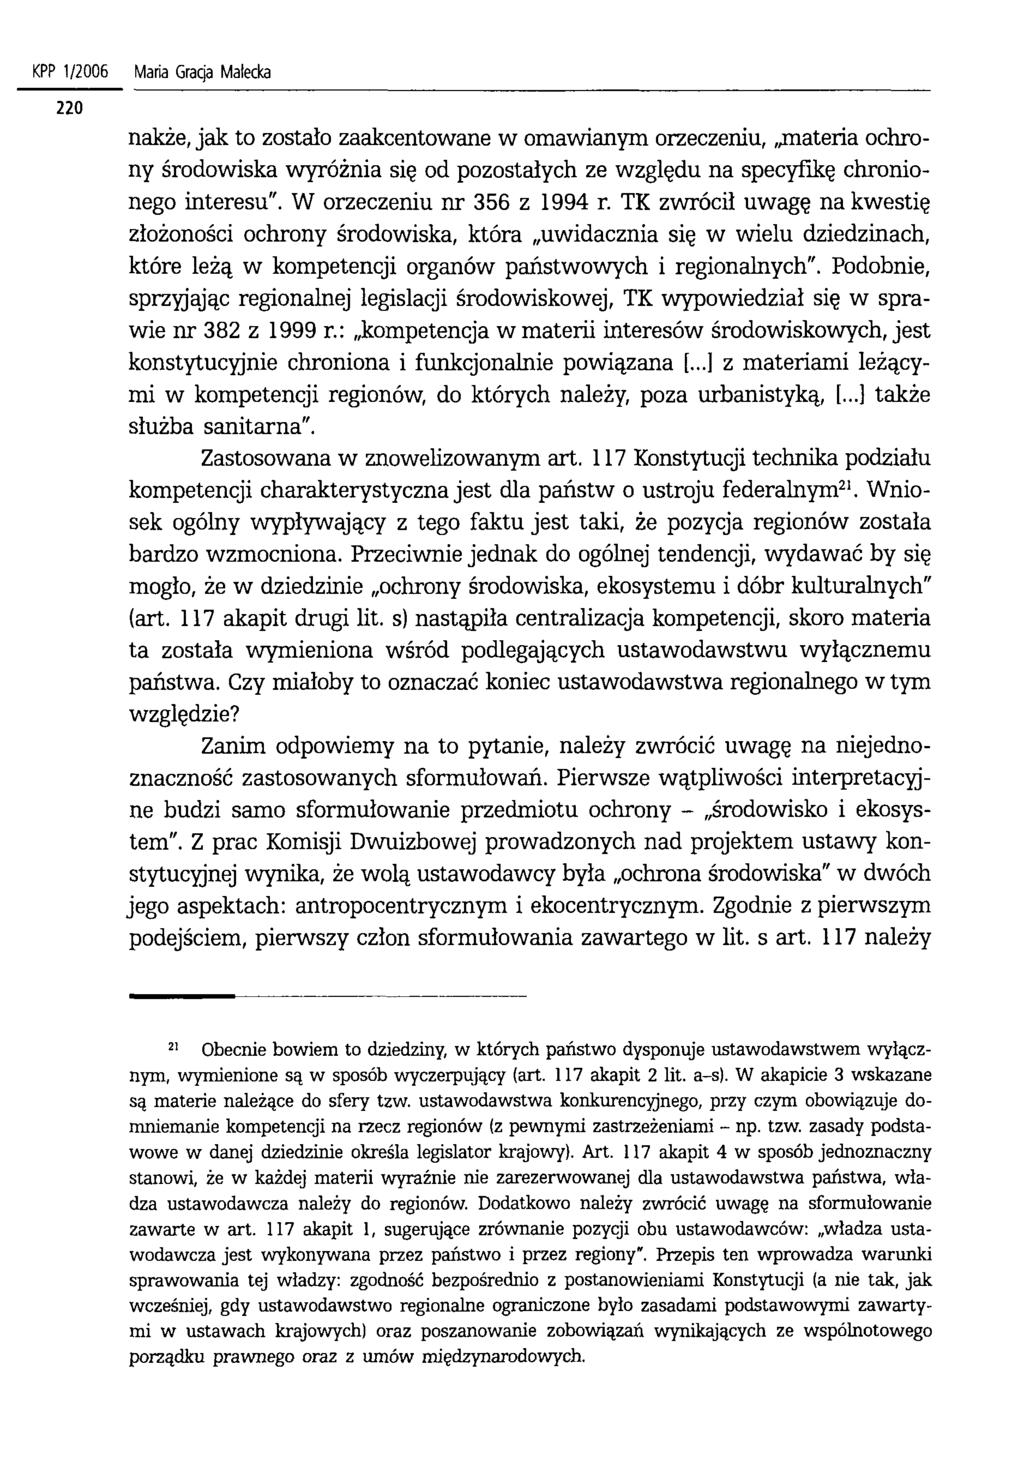 KPP 1/2006 Maria Gracja Małecka nakże, jak to zostało zaakcentowane w omawianym orzeczeniu, materia ochrony środowiska wyróżnia się od pozostałych ze względu na specyfikę chronionego interesu".